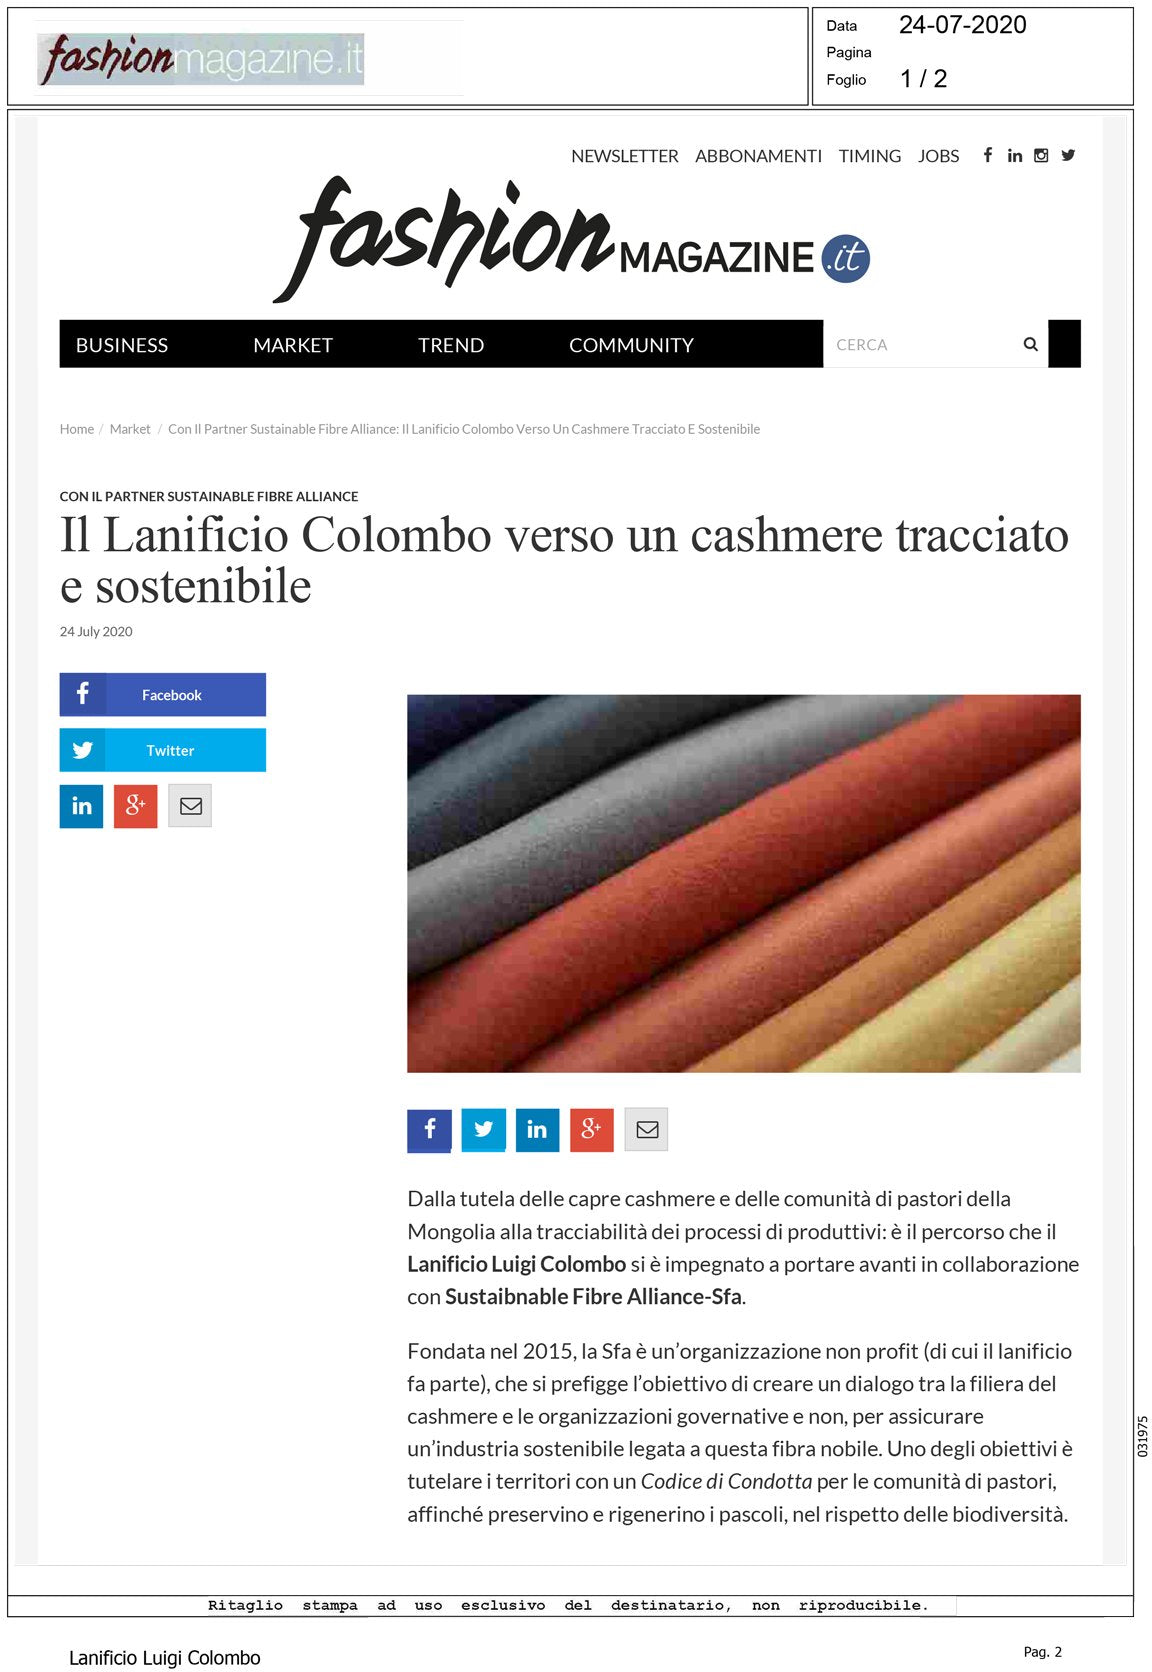 Fashion Magazine - Il Lanificio Colombo verso un cashmere tracciabile